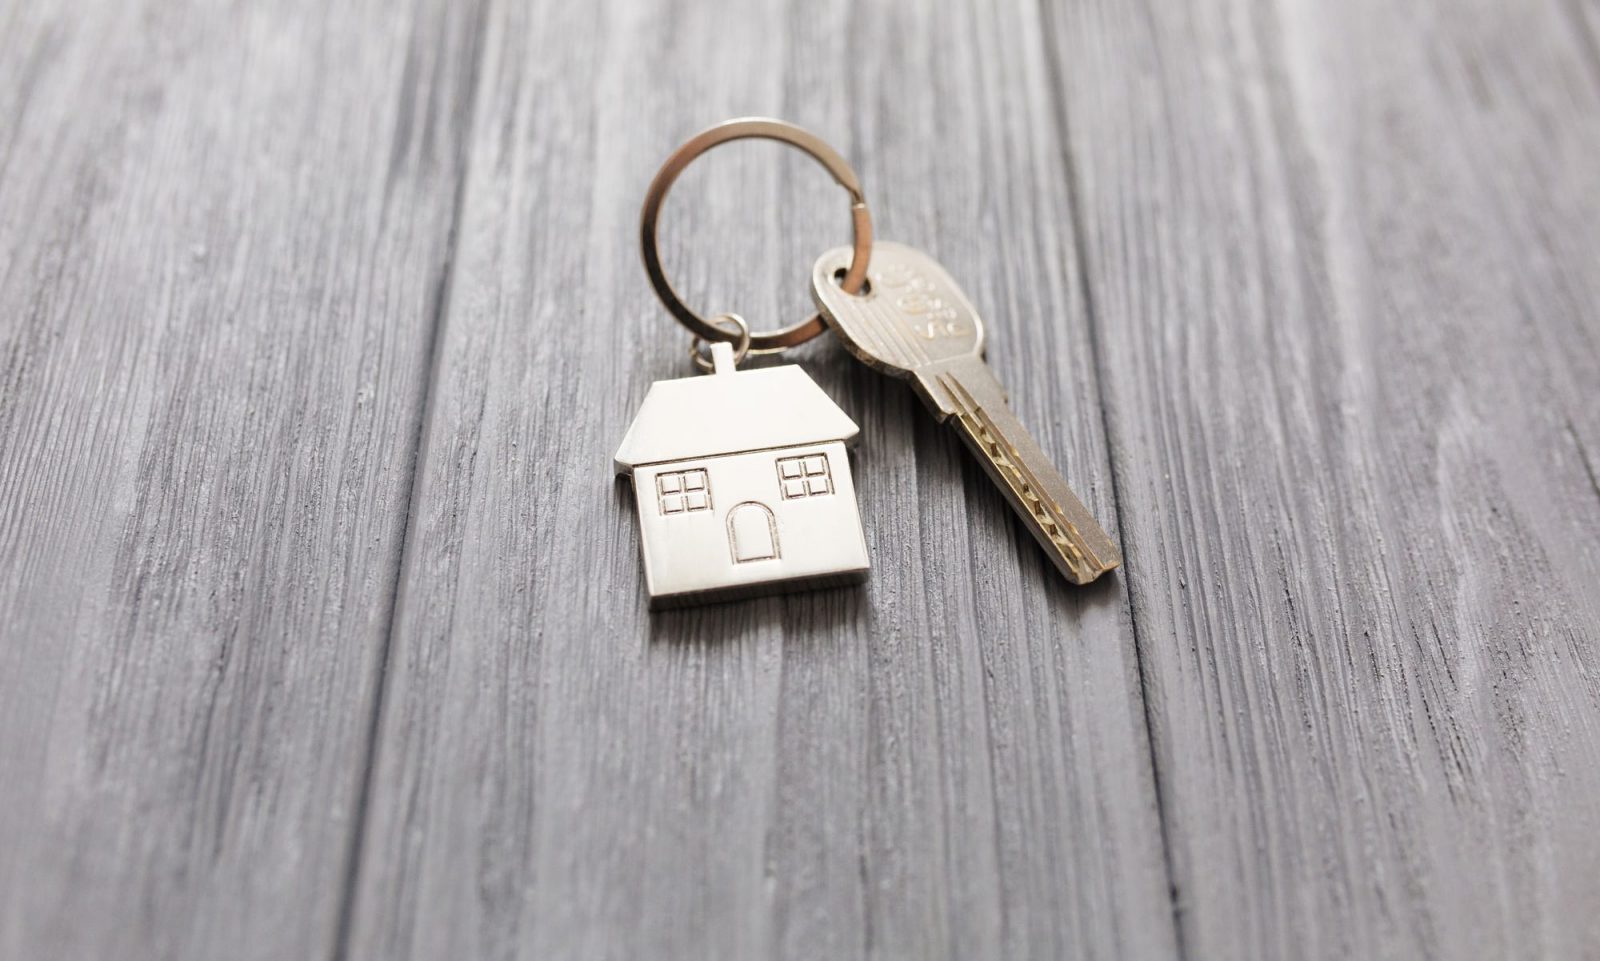 Les ventes de propriétés résidentielles en hausse dans la région métropolitaine